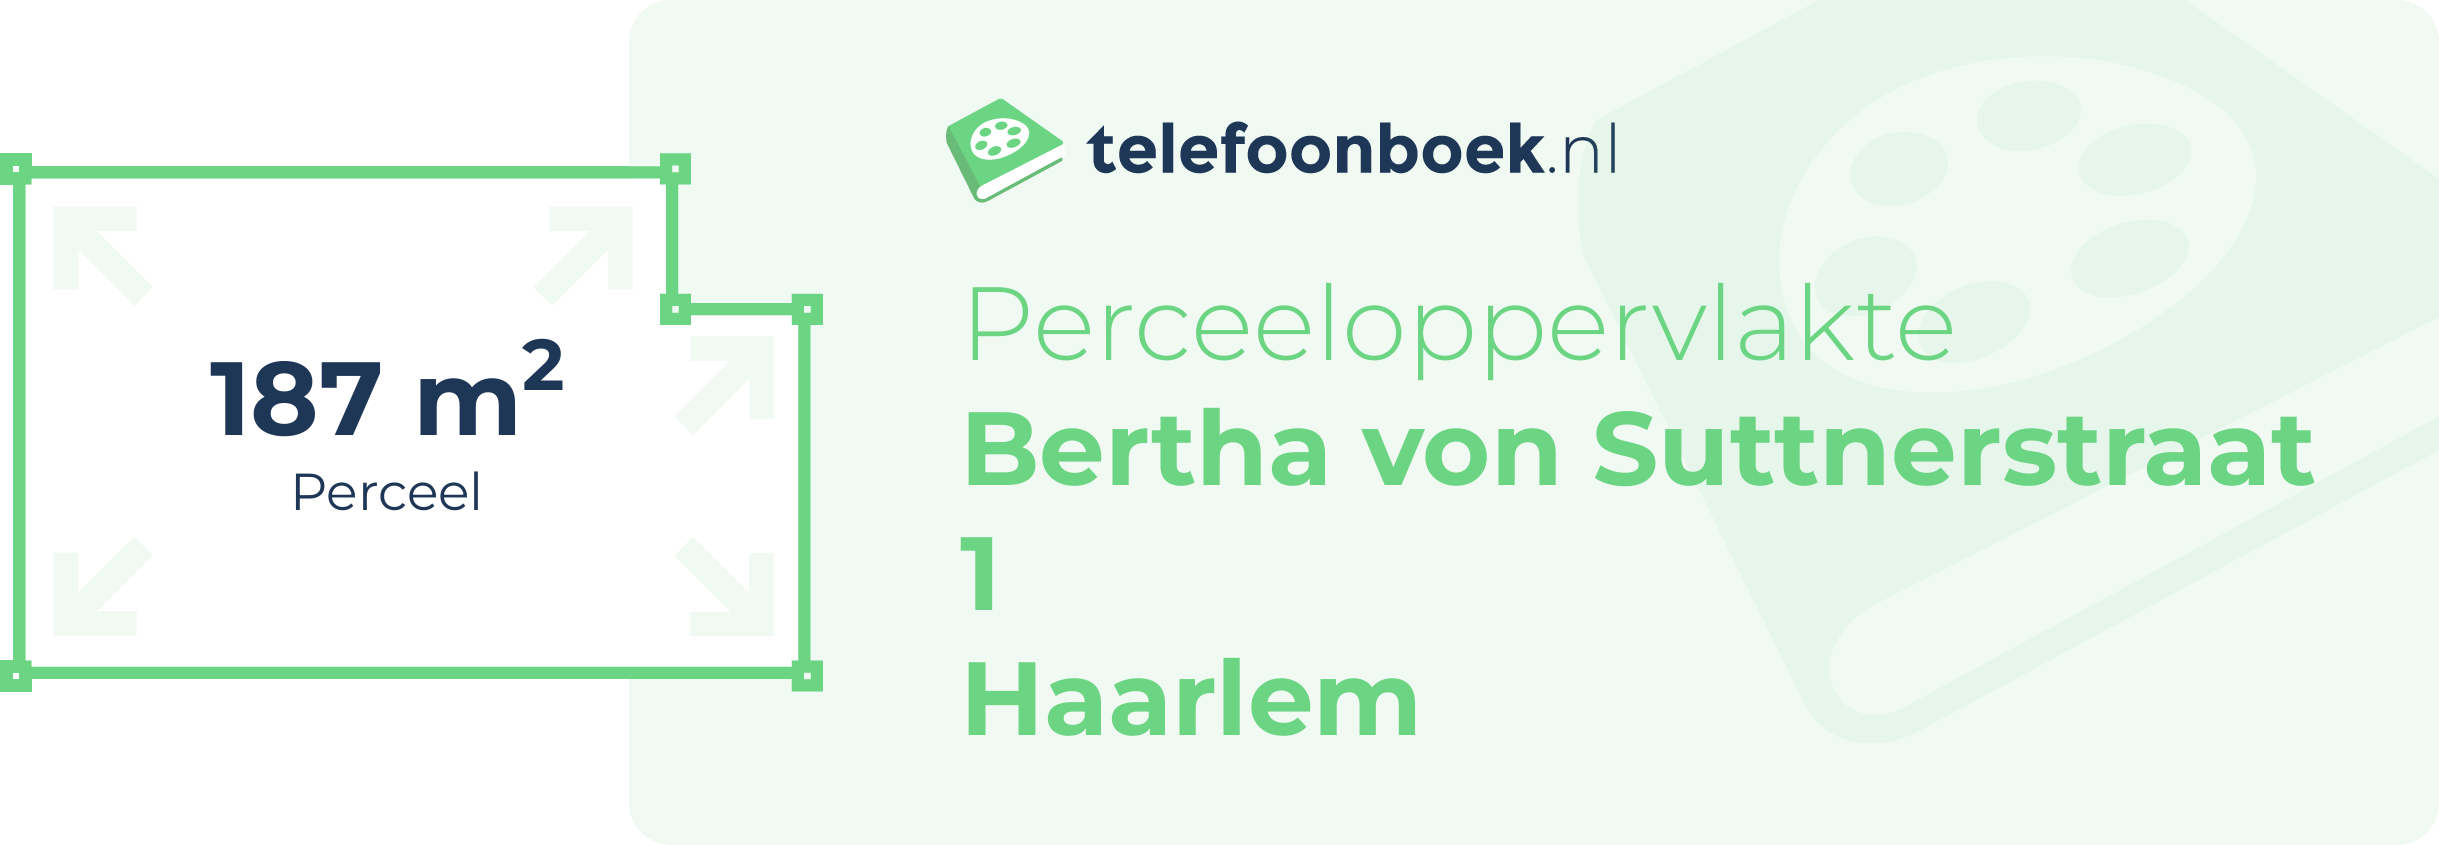 Perceeloppervlakte Bertha Von Suttnerstraat 1 Haarlem